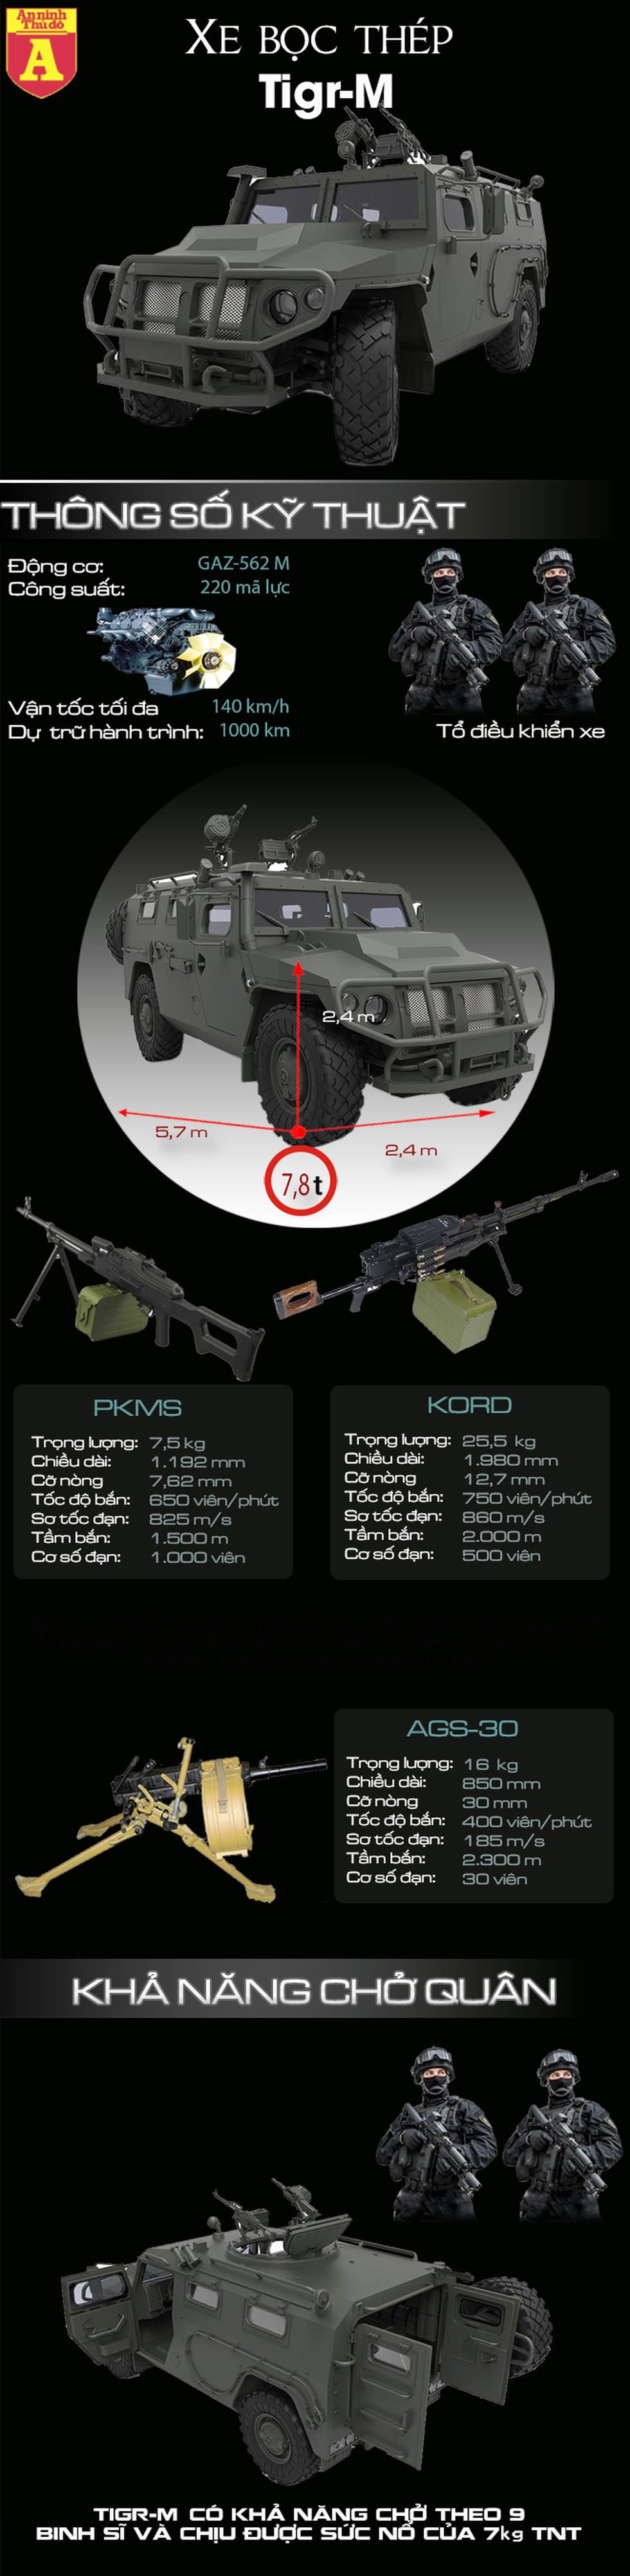 [Infographic] Xe bọc thép ưu việt của Nga vừa dính mìn tại chiến trường Syria - Ảnh 1